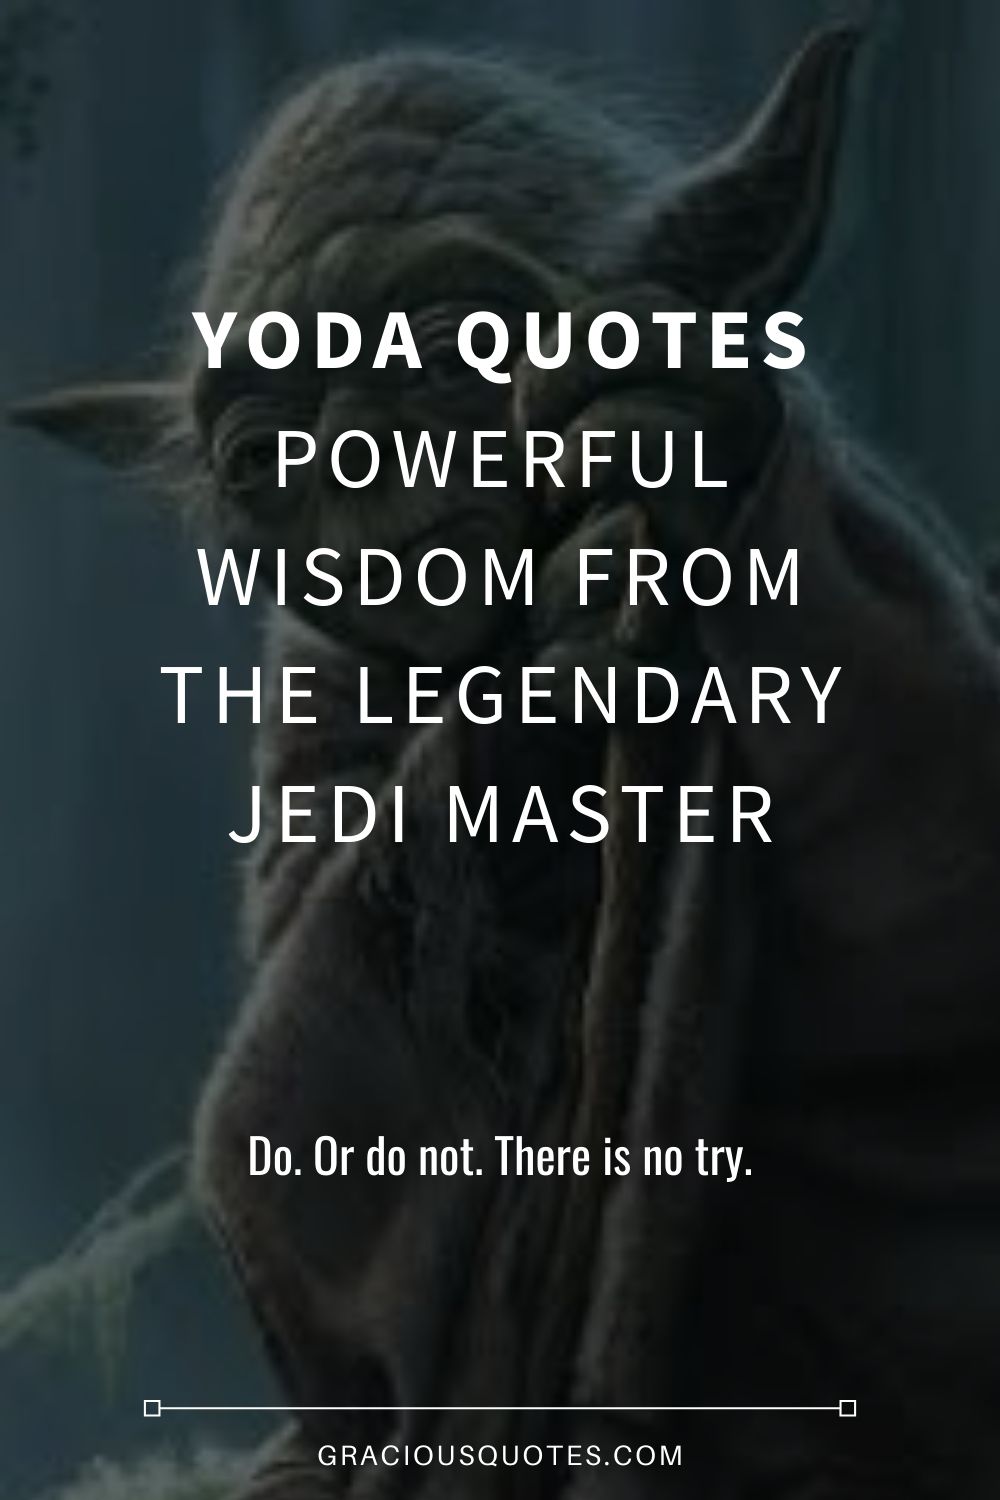 65 Yoda Quotes - Legendary Jedi Master (WISDOM)